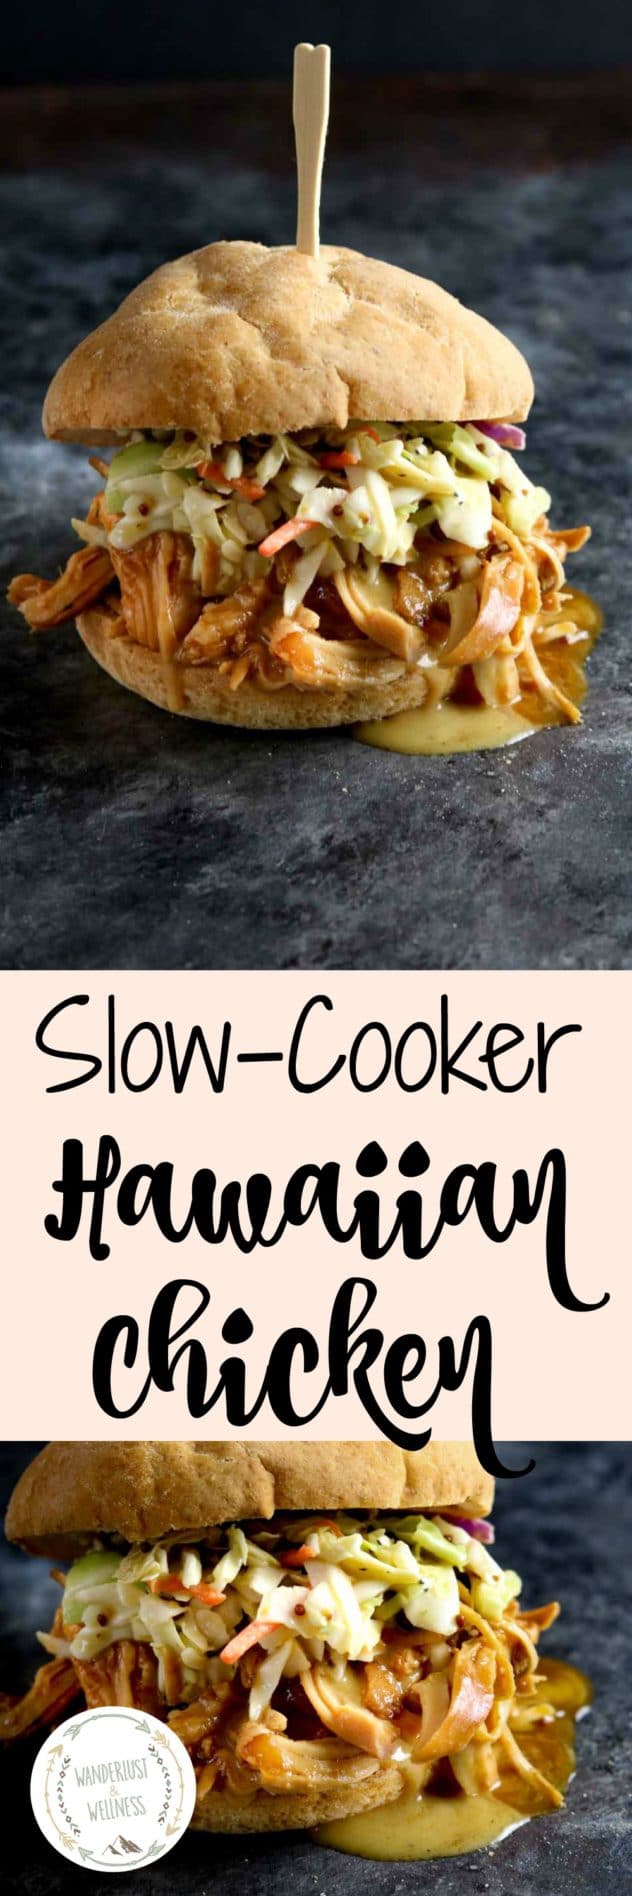 Slow-Cooker Hawaiian Chicken